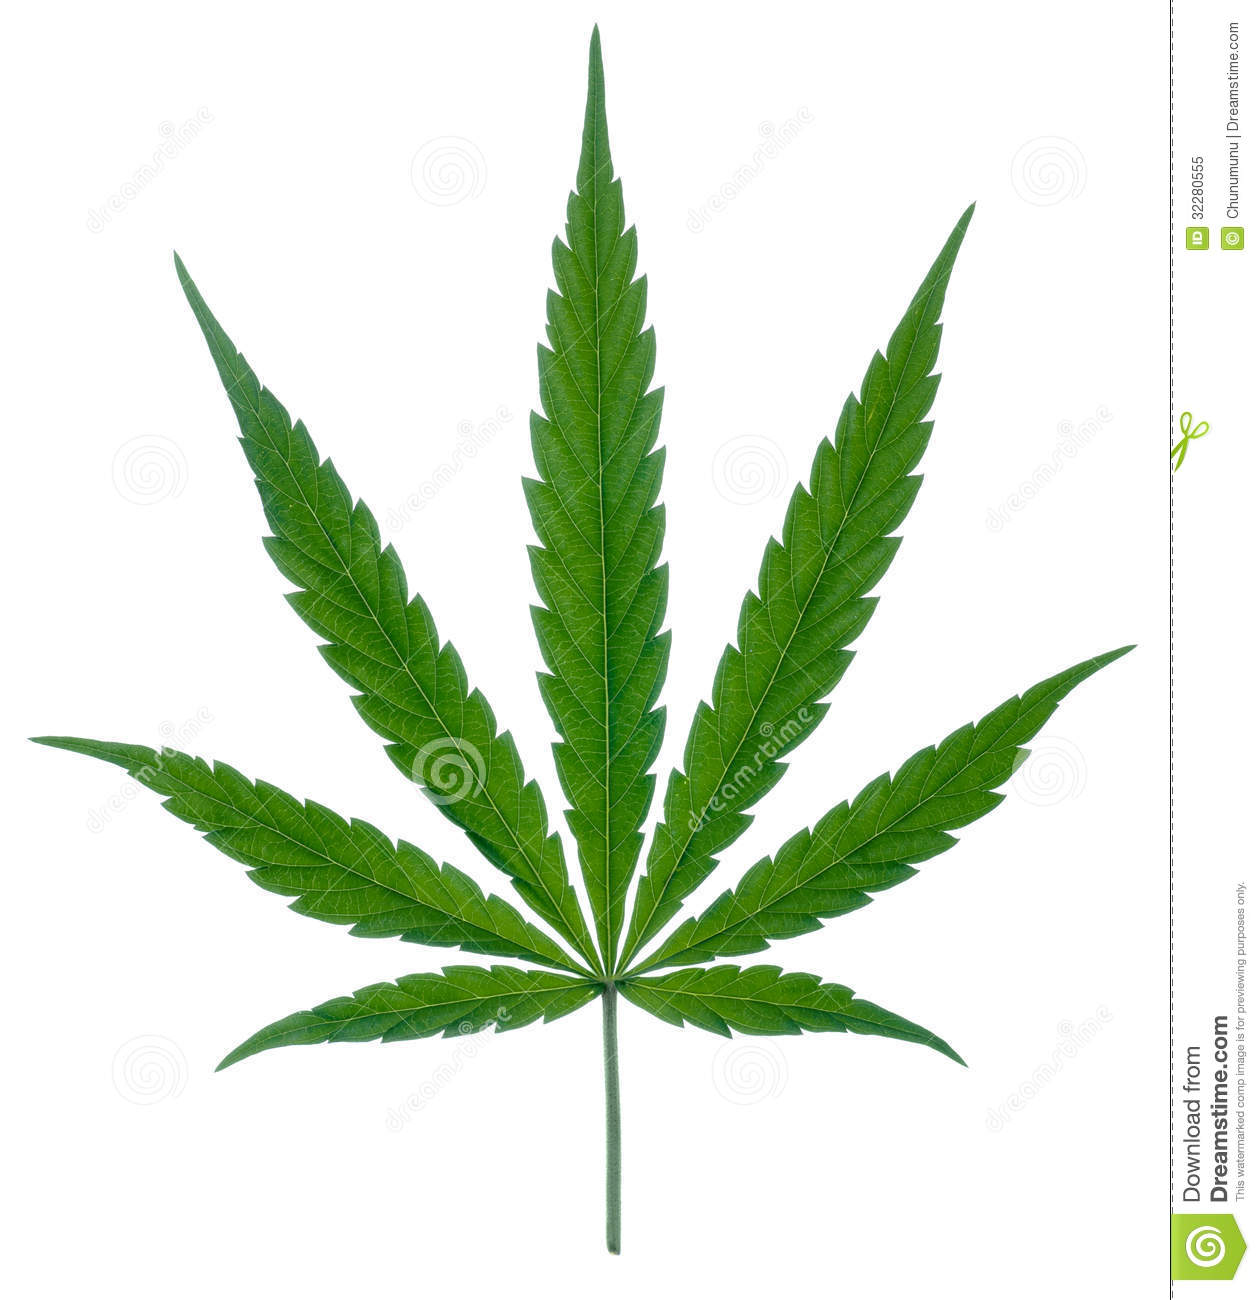 Royalty Free Stock Photo  Marijuana Leaf With Stipe  Image  32280555